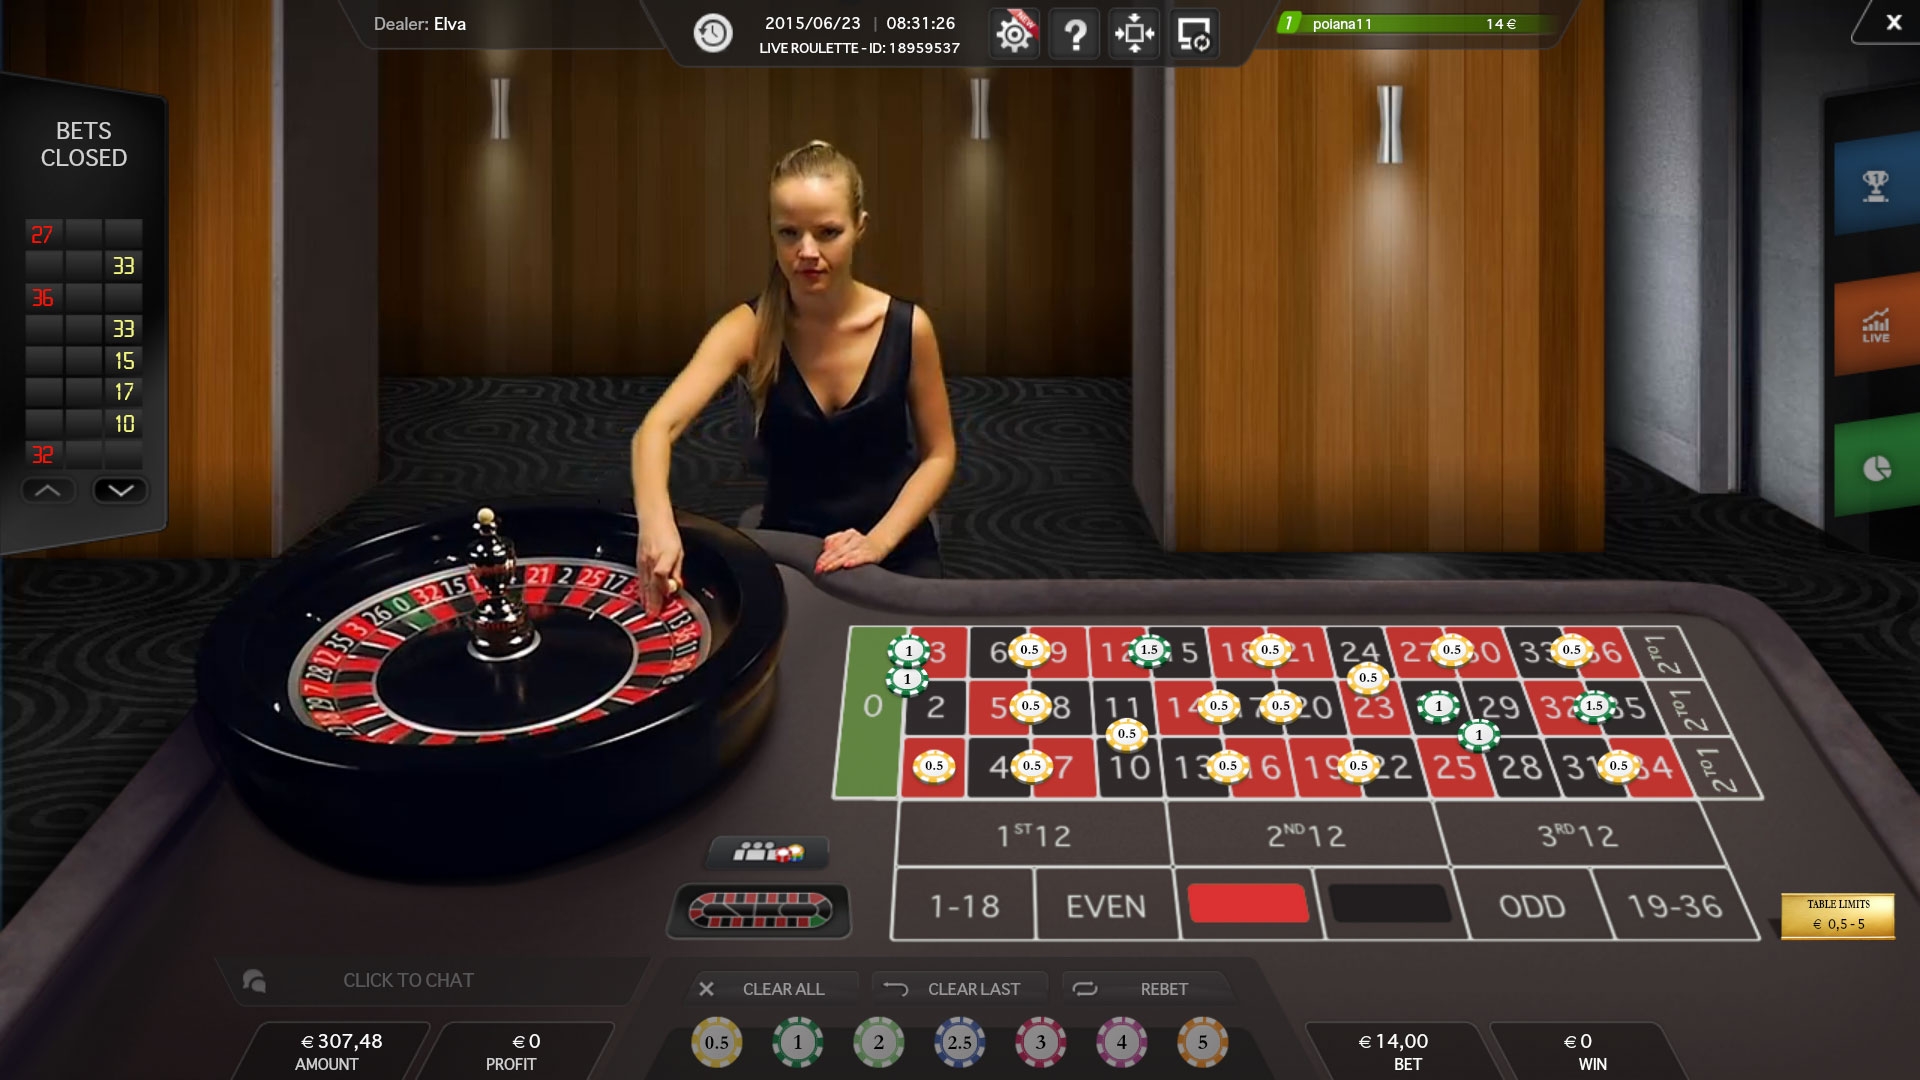 Играть в онлайн рулетку с выводом реальных денег казино вулкан бездепозитный бонус за регистрацию 2019